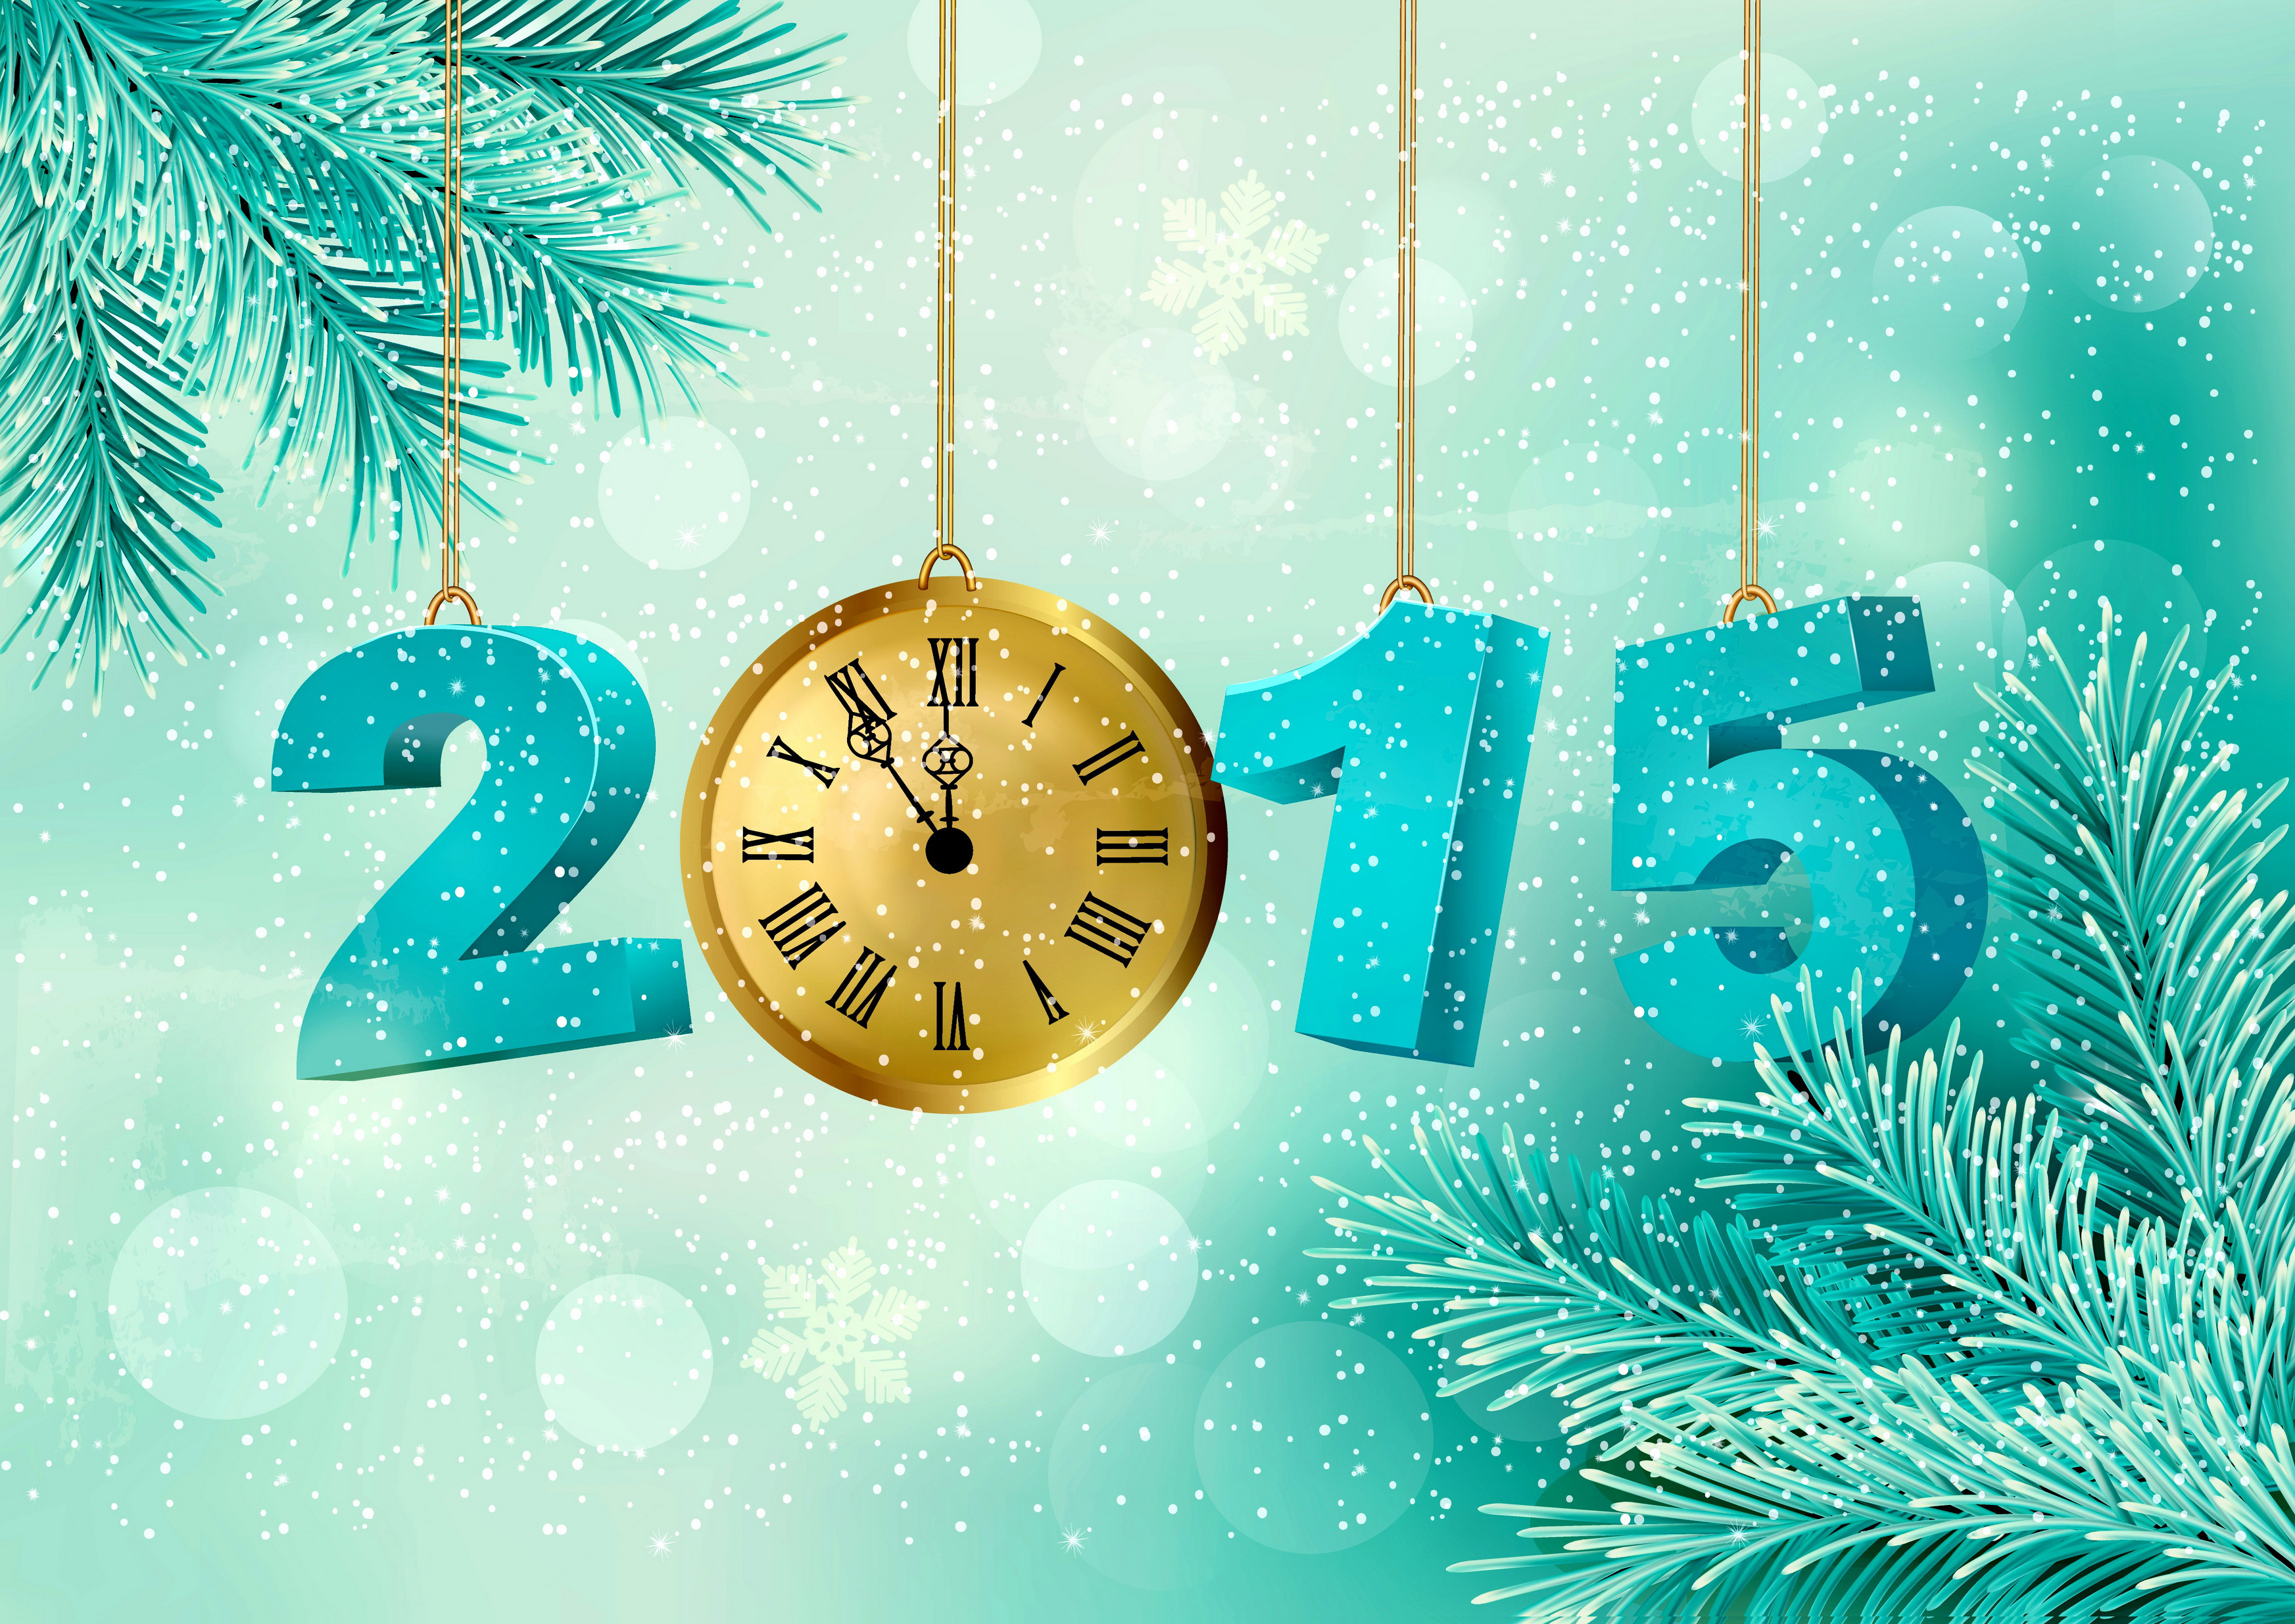 2015. Часы новогодние. Новый год часы. Новогодние открытки 2015. Новогодние открытки 2015 года.